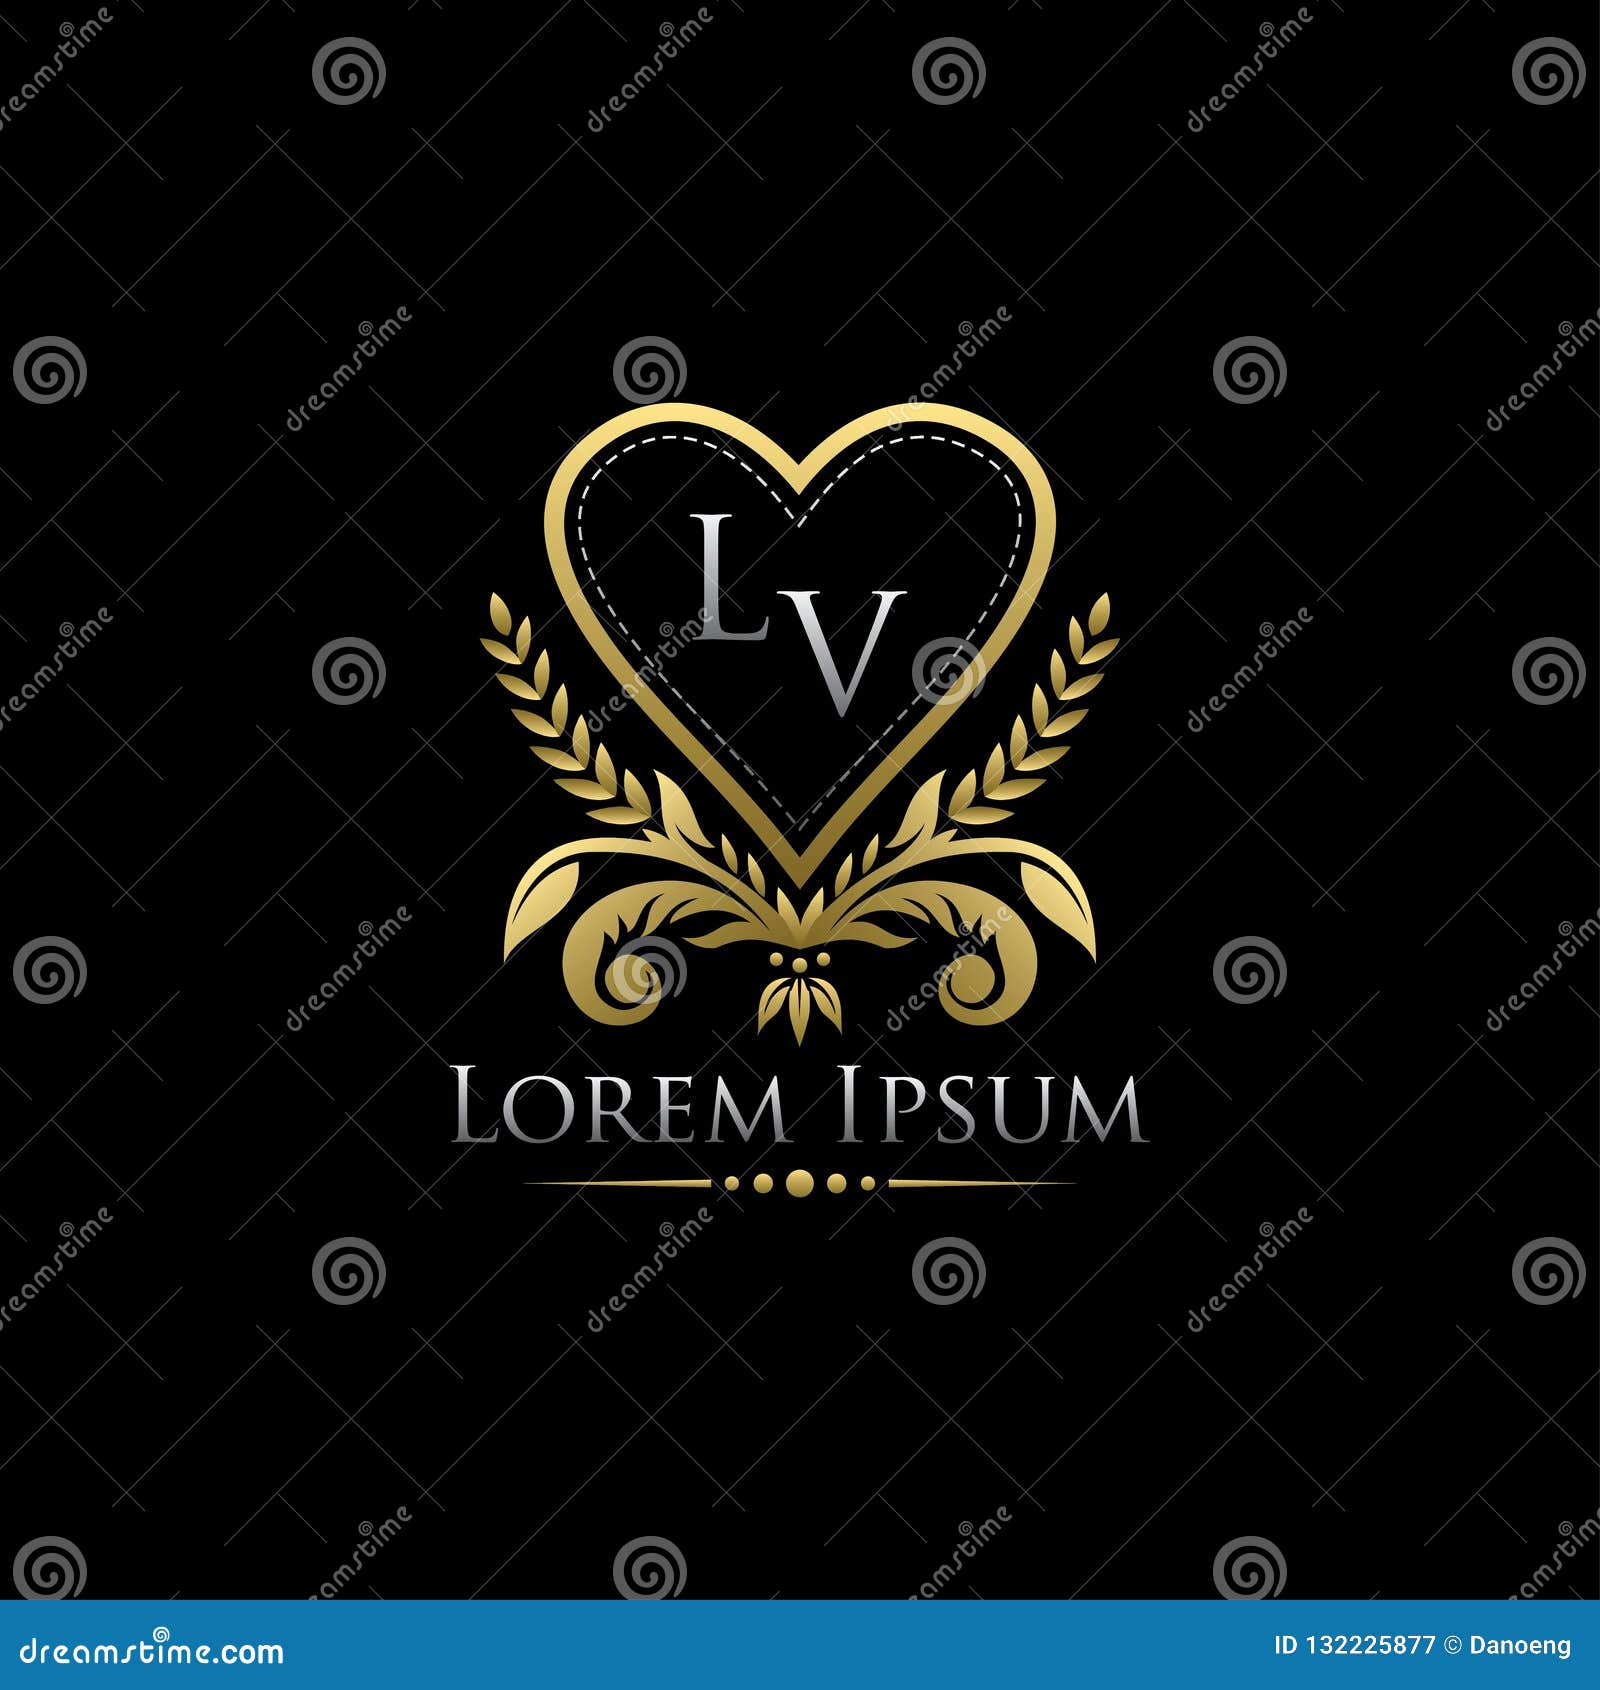 Gold Classy Love Heart LV Letter Logo Stock Illustration - Illustration of  heraldic, calligraphic: 132225877